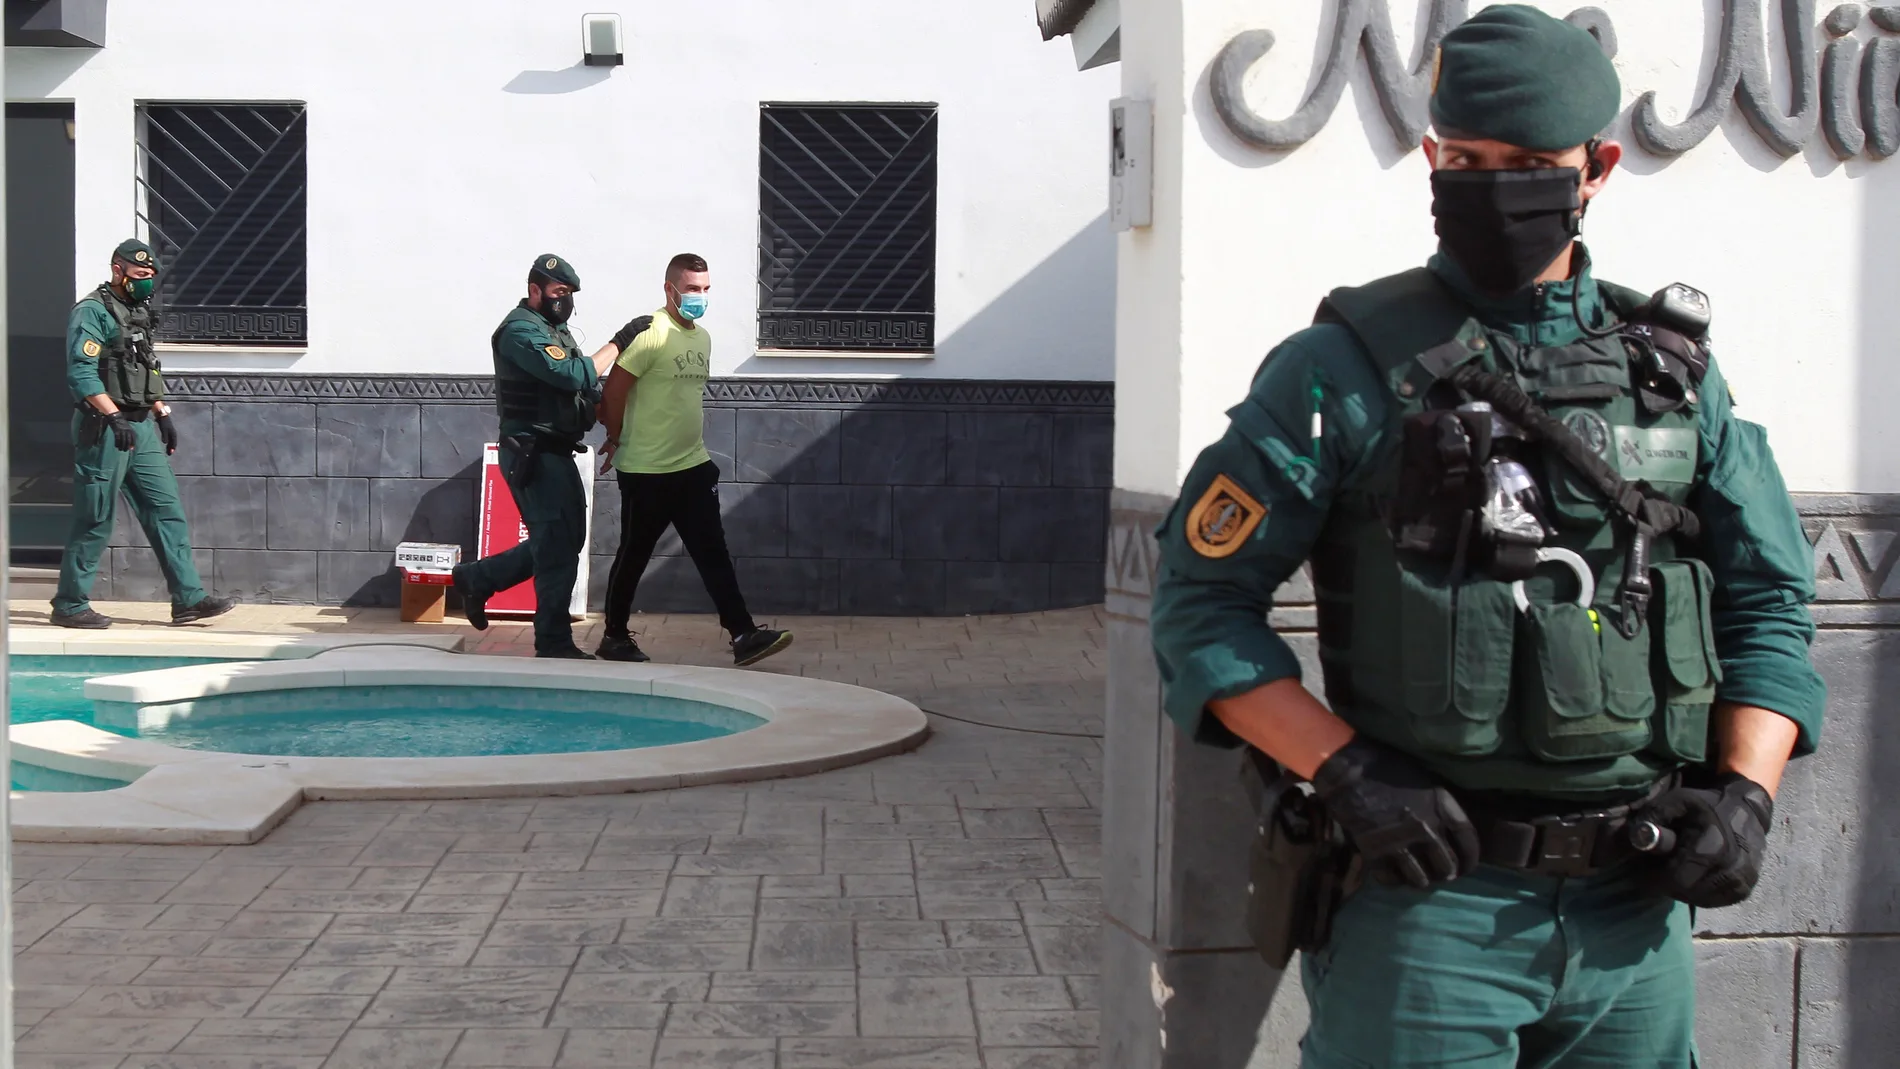 Más de 200 agentes de la Guardia Civil se han desplegado en una operación contra el narcotráfico que se lleva a cabo en los municipios gaditanos de San Roque y La Línea de la Concepción, y en Marbella, Manilva y Mijas, en Málaga